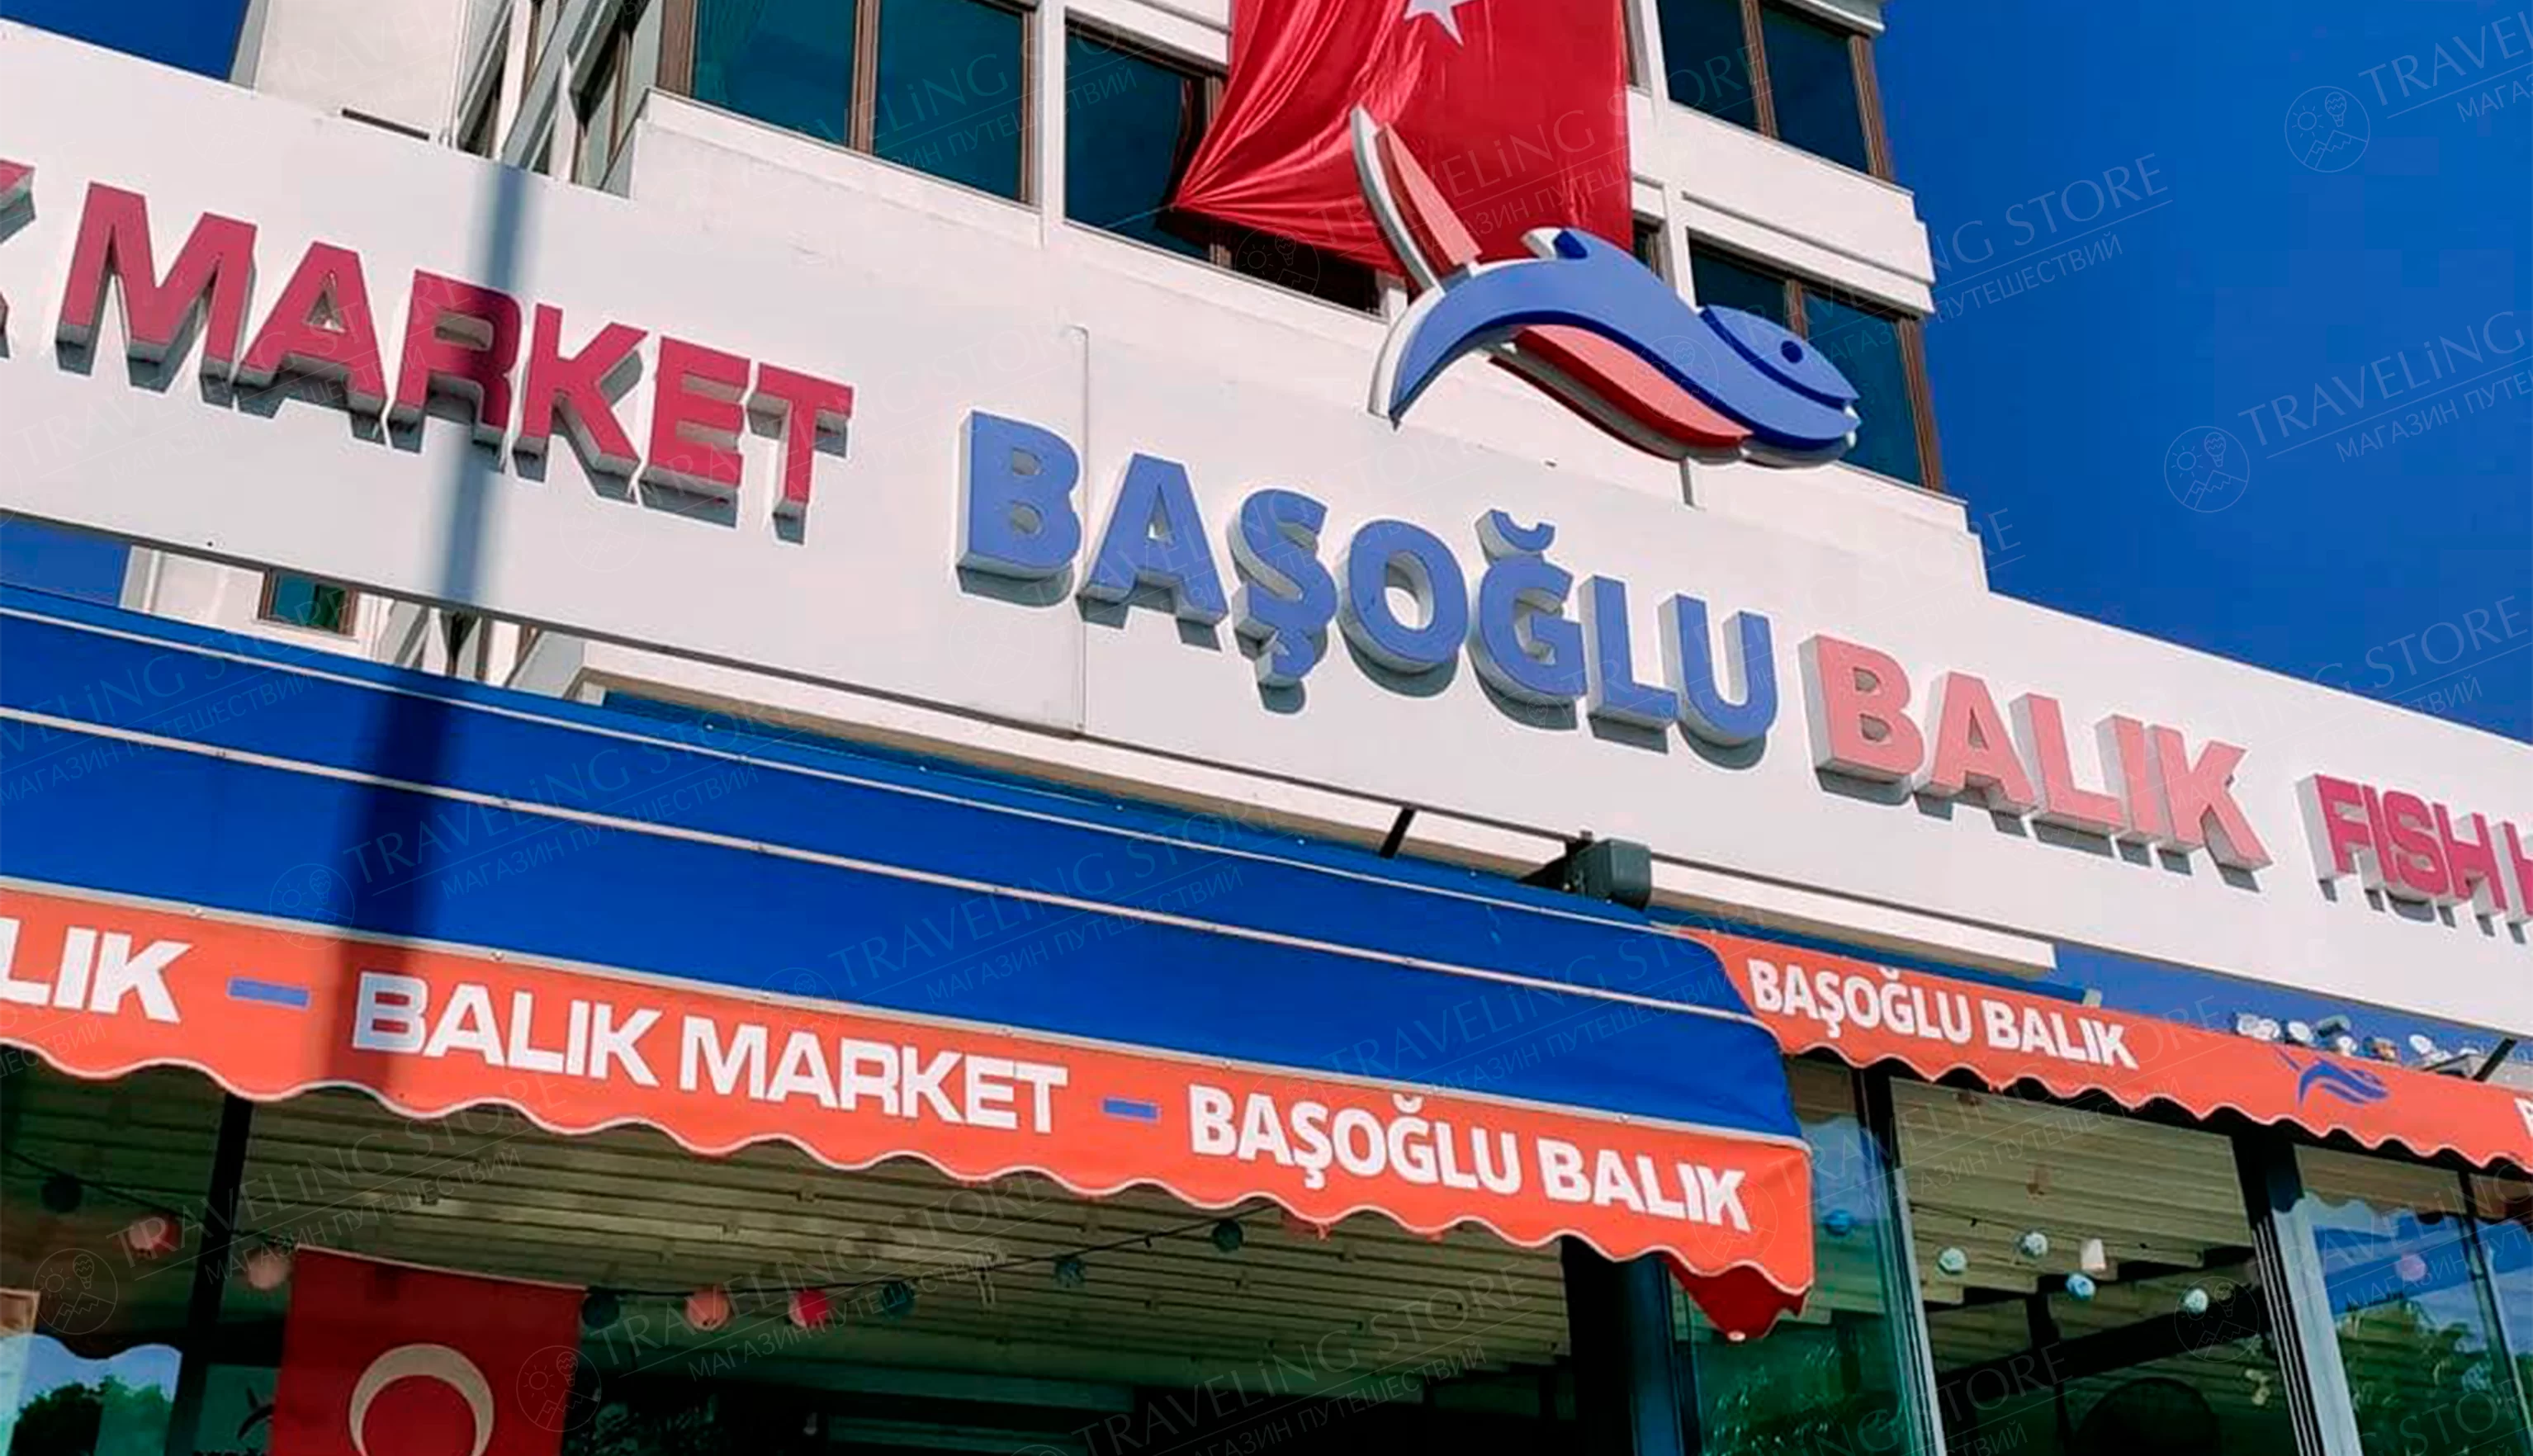 Restaurant Başoğlu balık from Belek